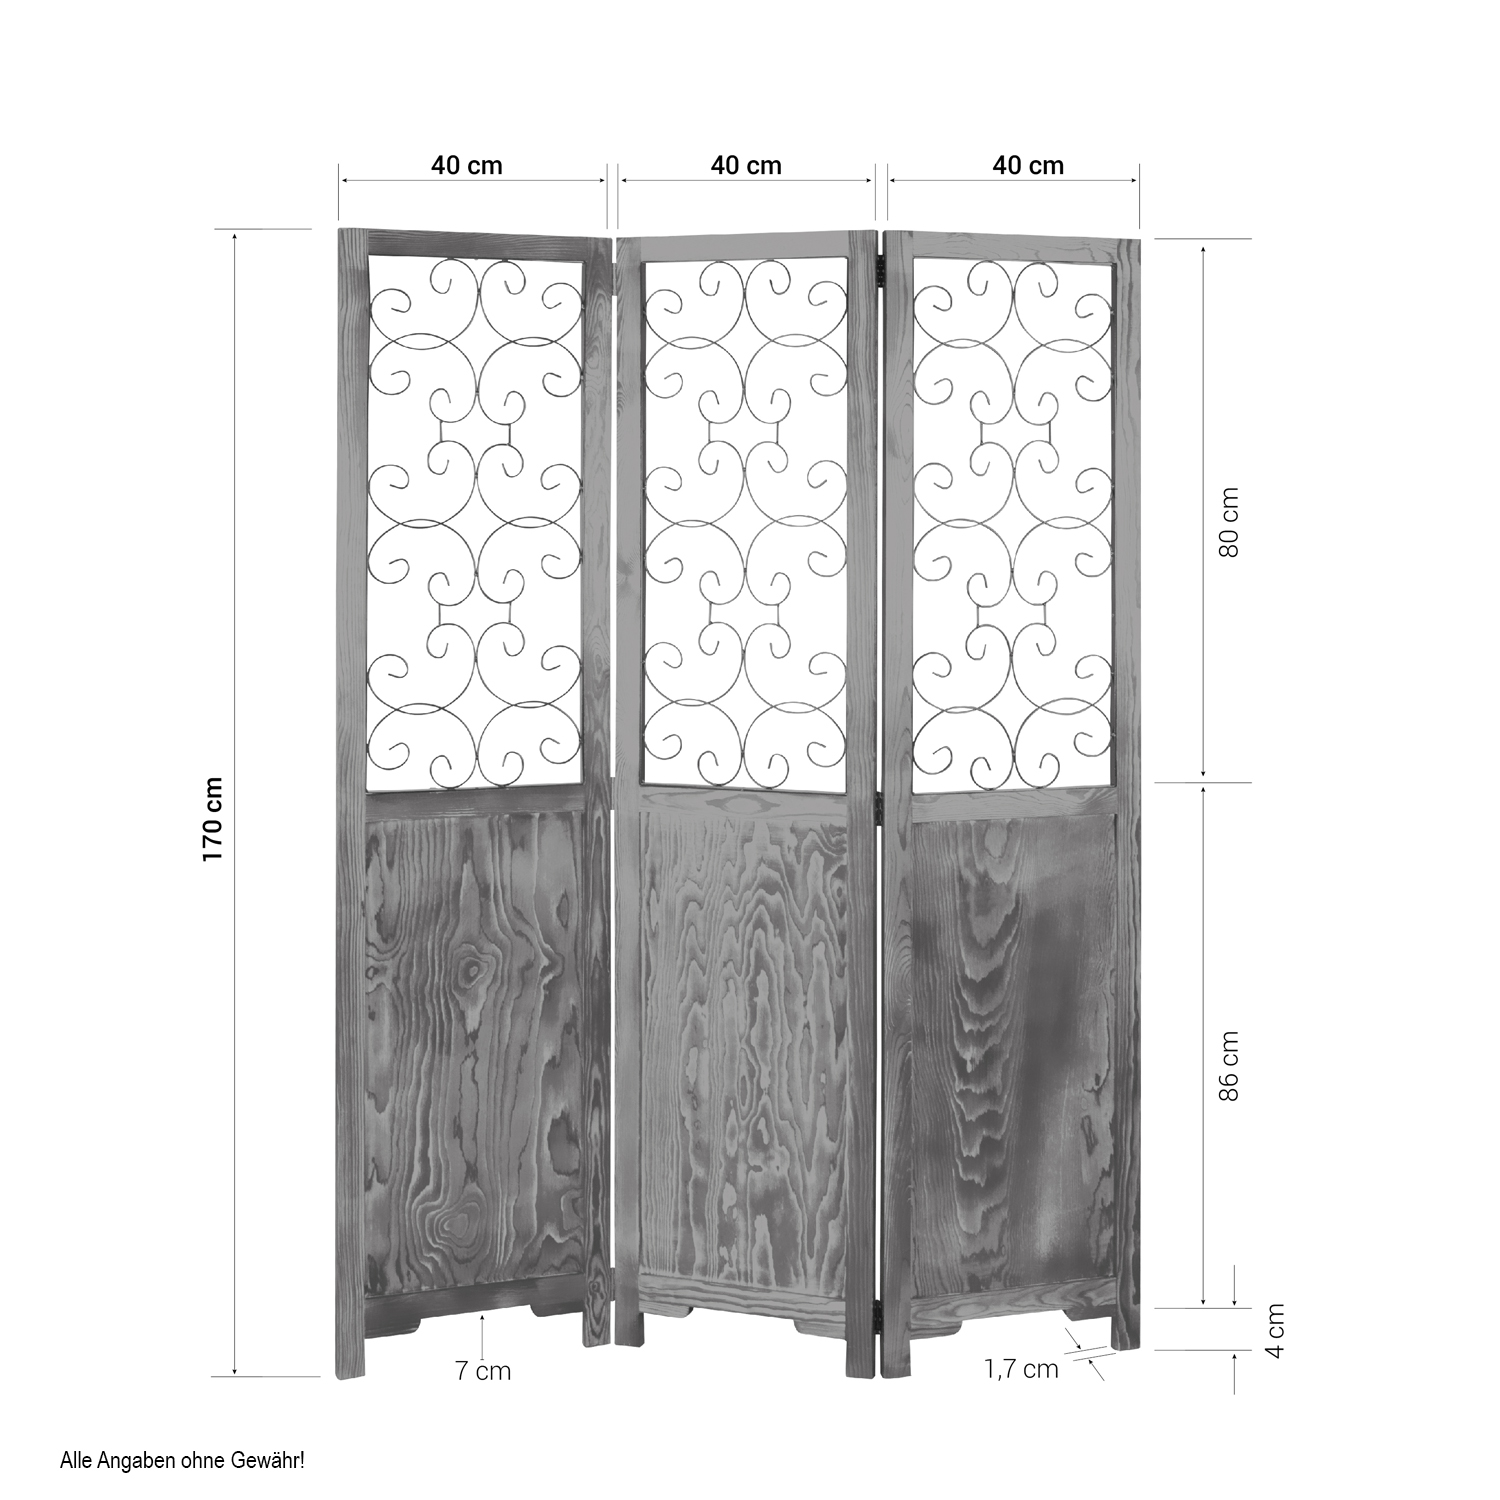 Paravent Raumteiler 3 fach Holz Trennwand spanische Wand Sichtschutz braun